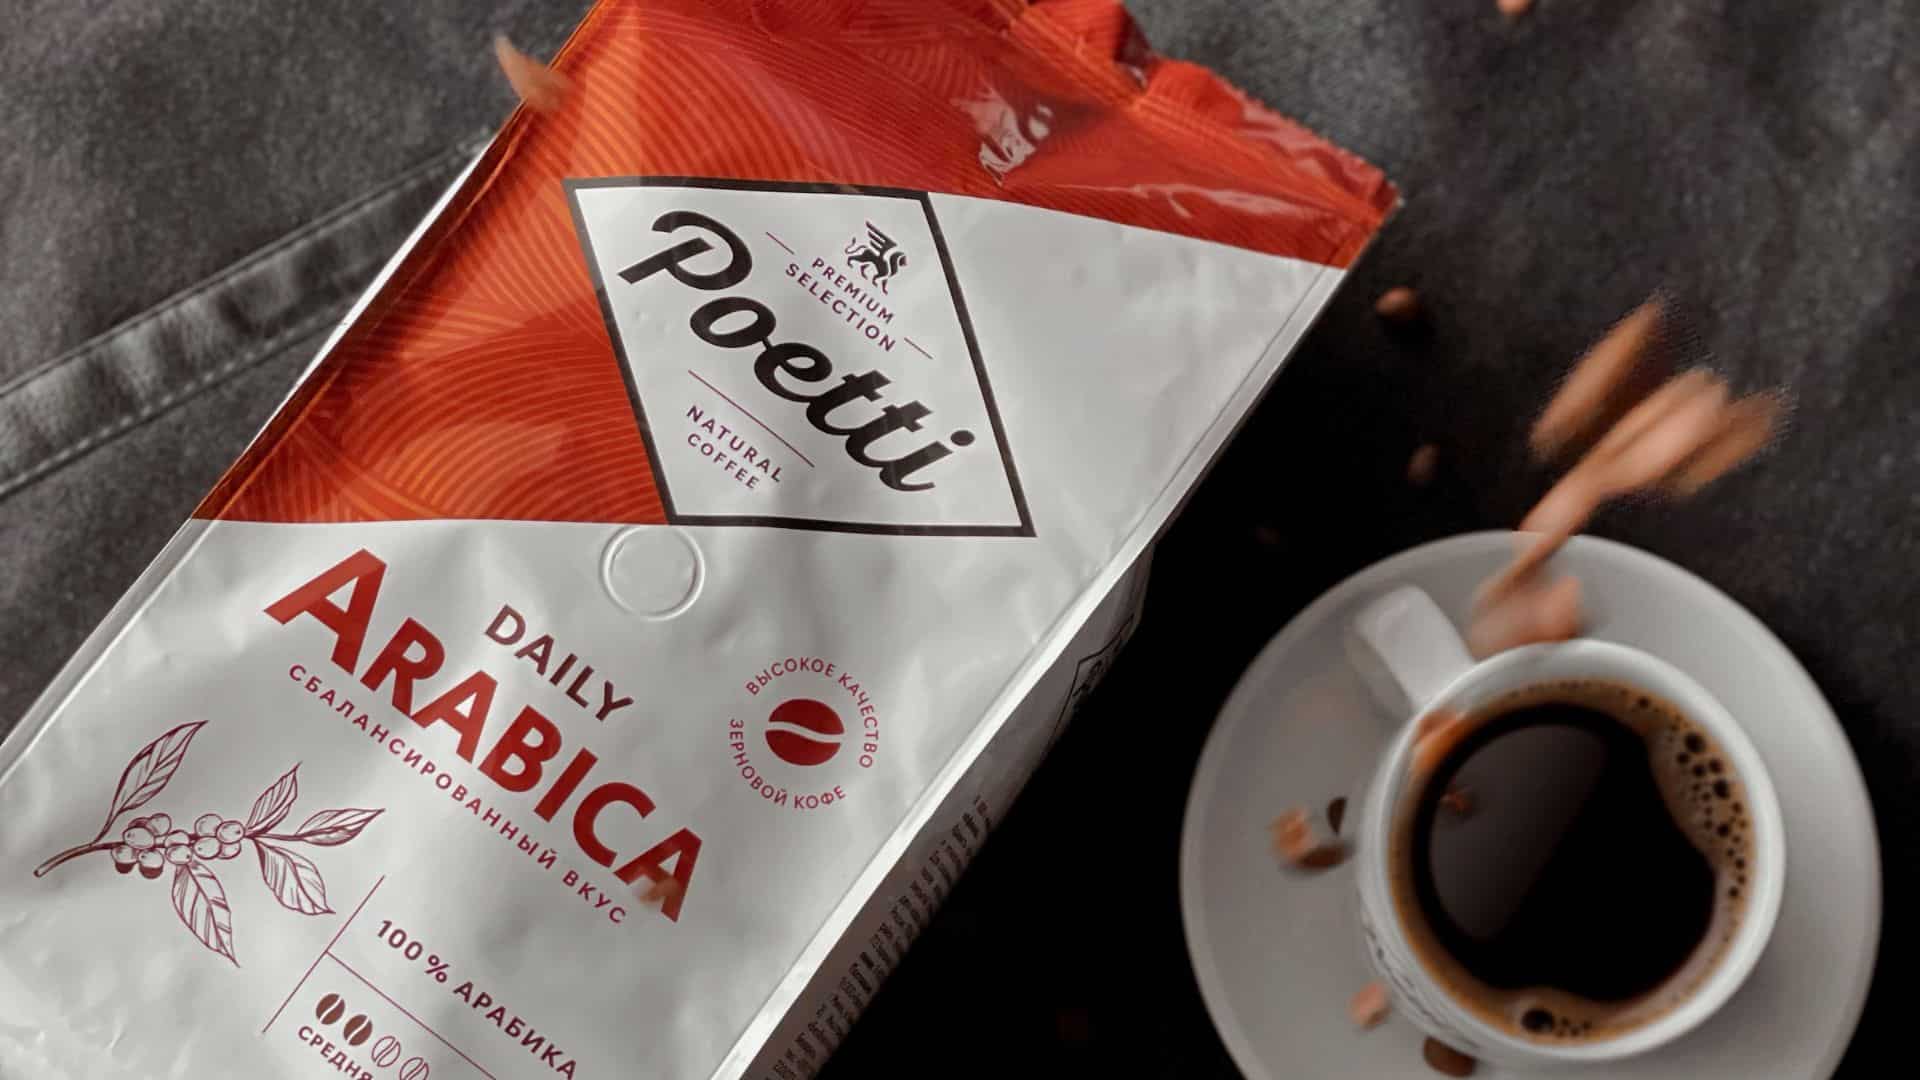 Кофе daily arabica. Кофе в ярче. Кофе Poeti Daily Arabica. Кофе молотый Poetti Daily Arabica. Ярче кофе с собой.